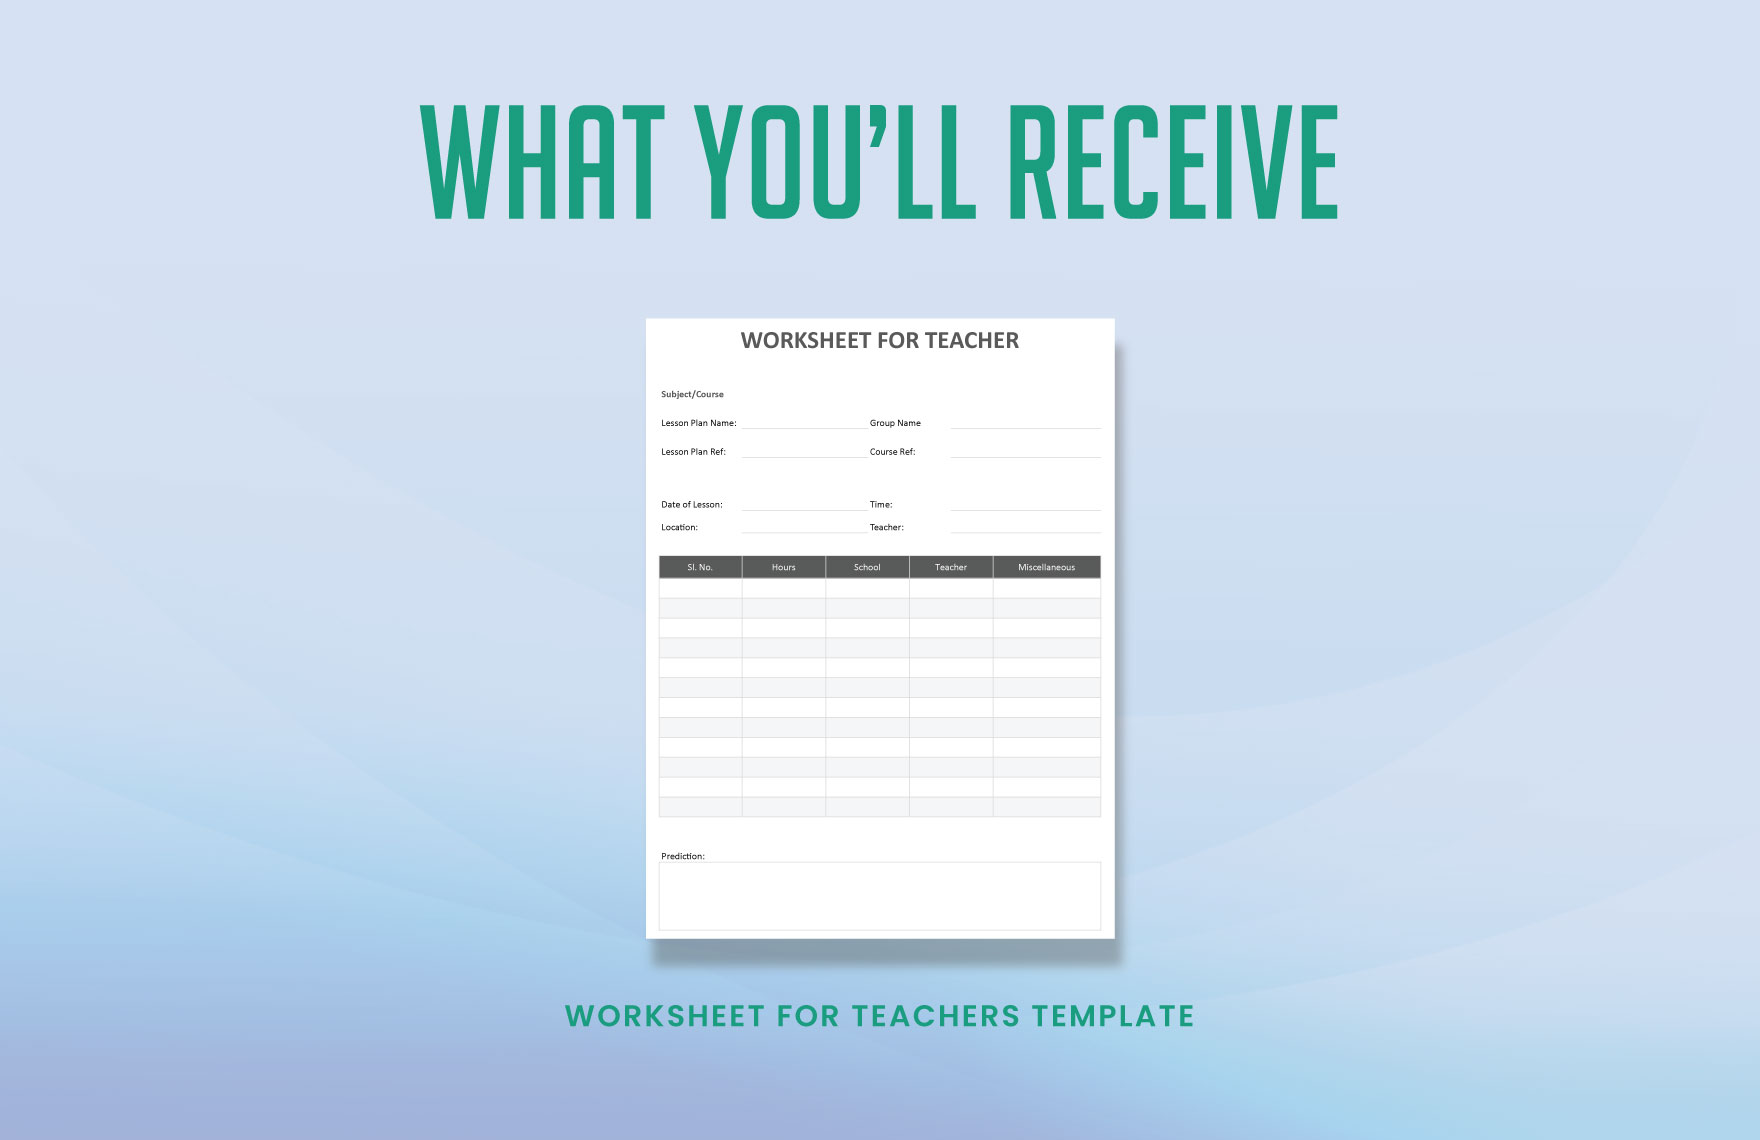 Worksheet for Teacher Template